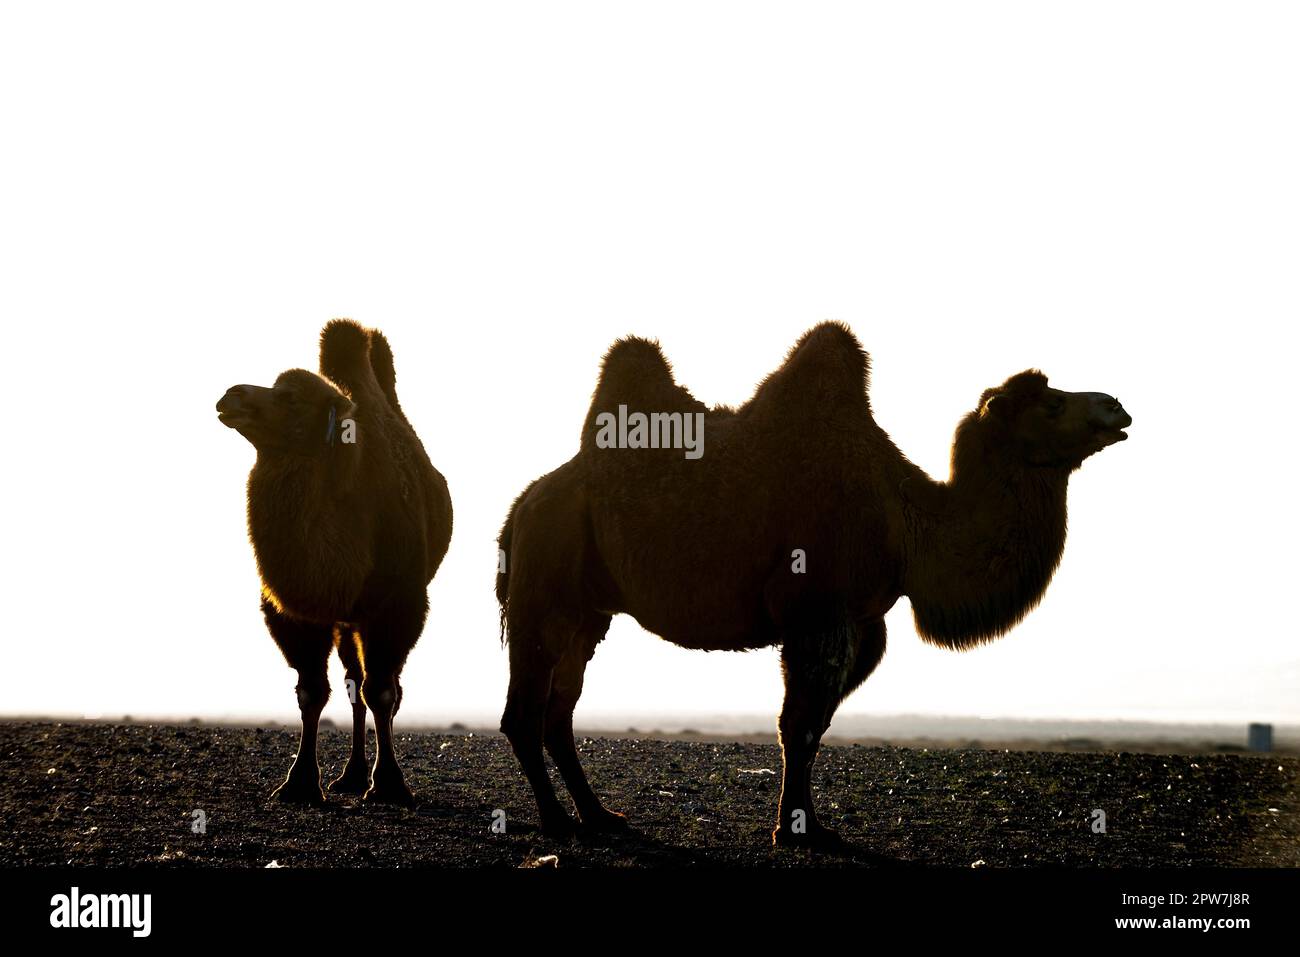 Die Silhouetten zweier Kamele oder Bactrianischer Kamele in der Hitze der Wüste Gobi, der Mongolei, Zentralasien Stockfoto